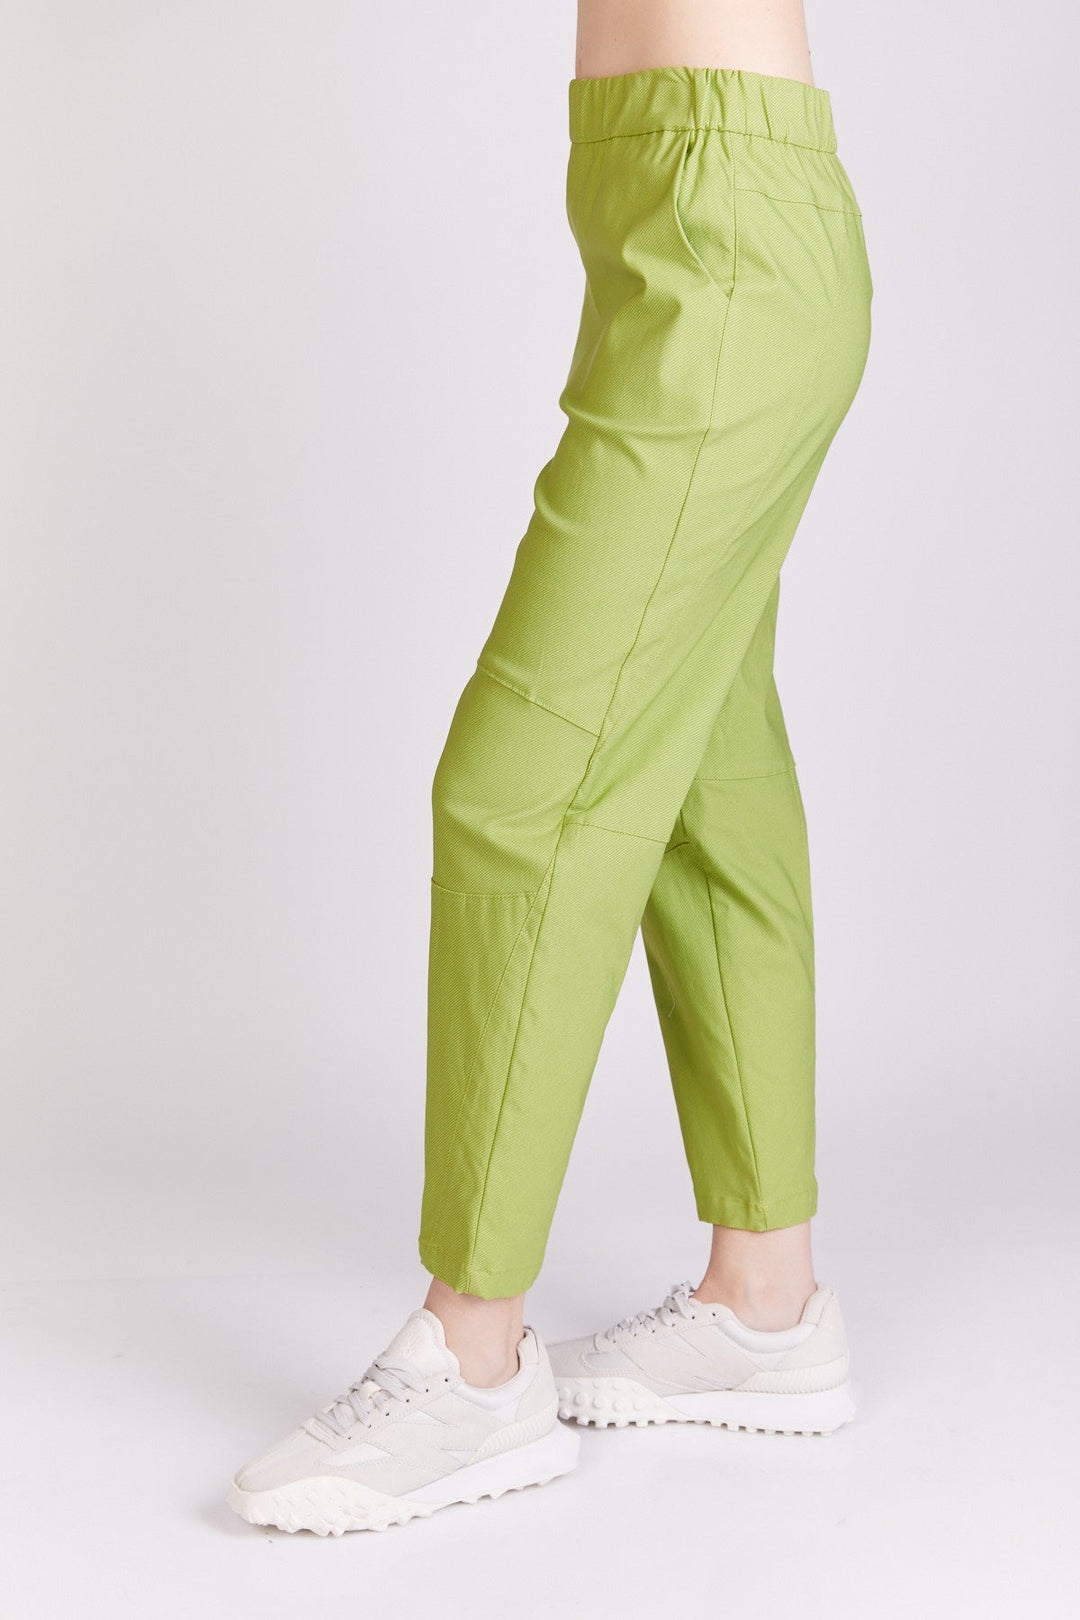 מכנסי רוק בצבע ירוק - Razili Studio